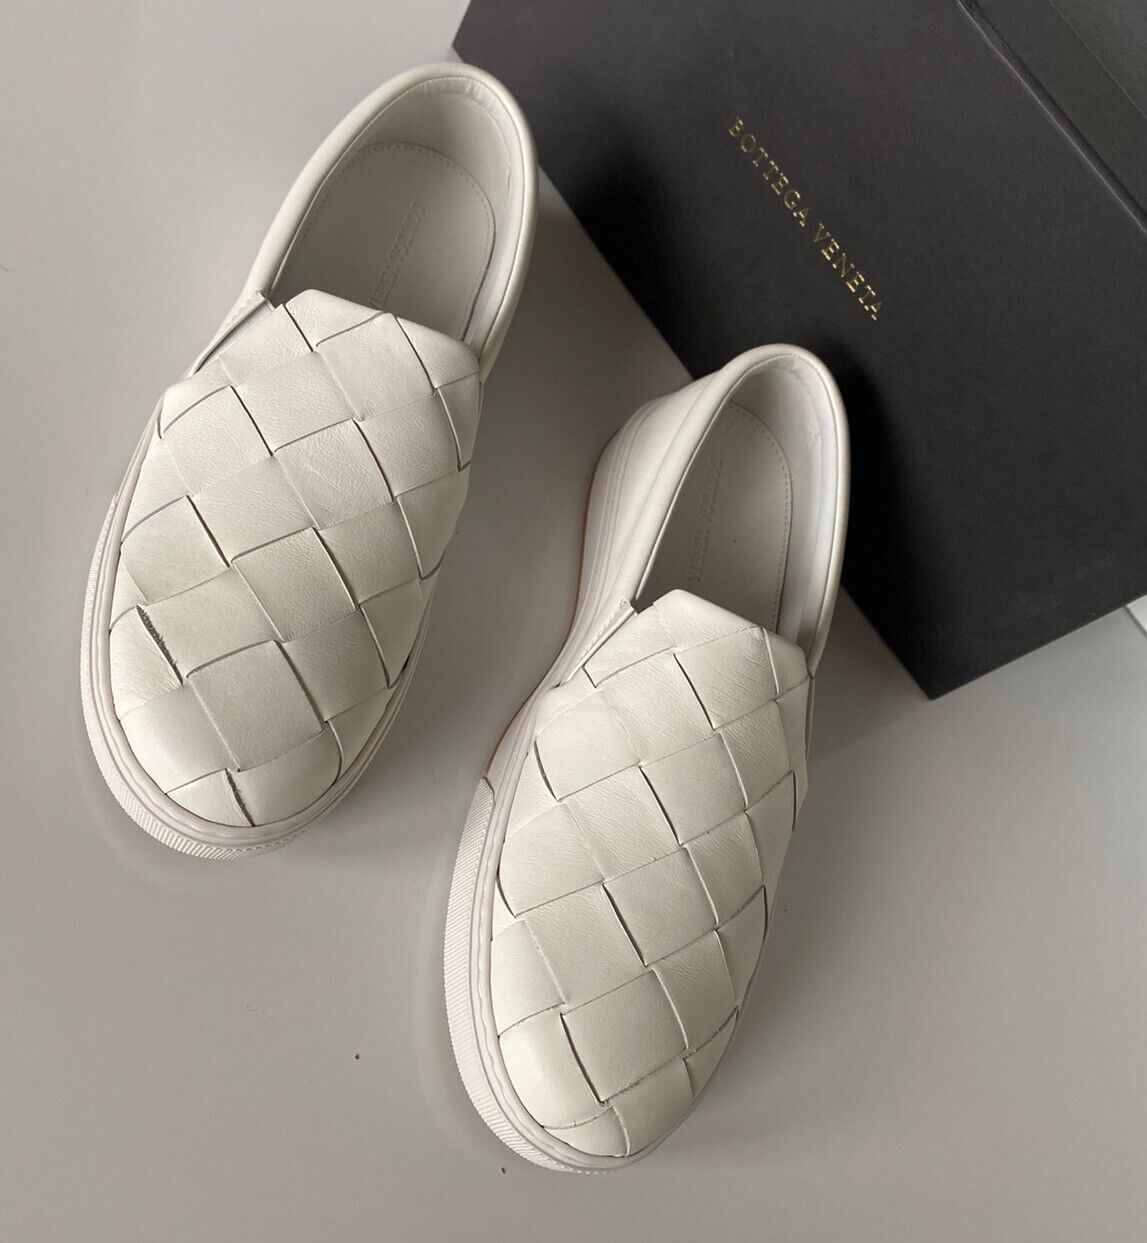 NIB Bottega Veneta Белые туфли из телячьей кожи с резиновой подошвой, 10, США 578303 9122 